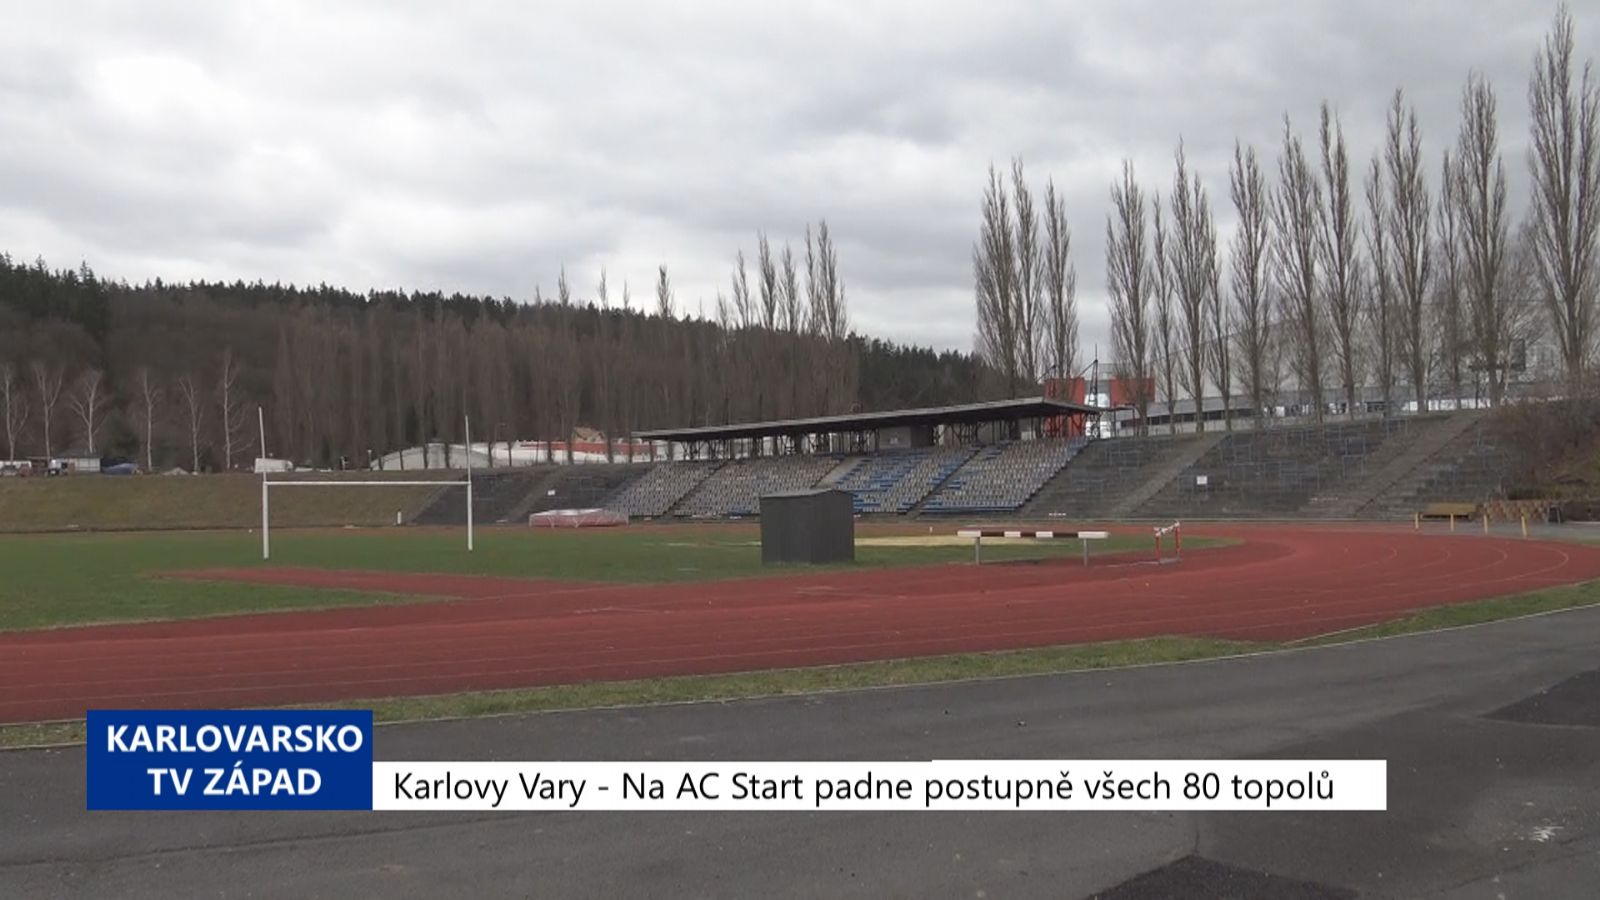 Karlovy Vary: Na AC Start padne postupně všech 80 topolů (TV Západ)